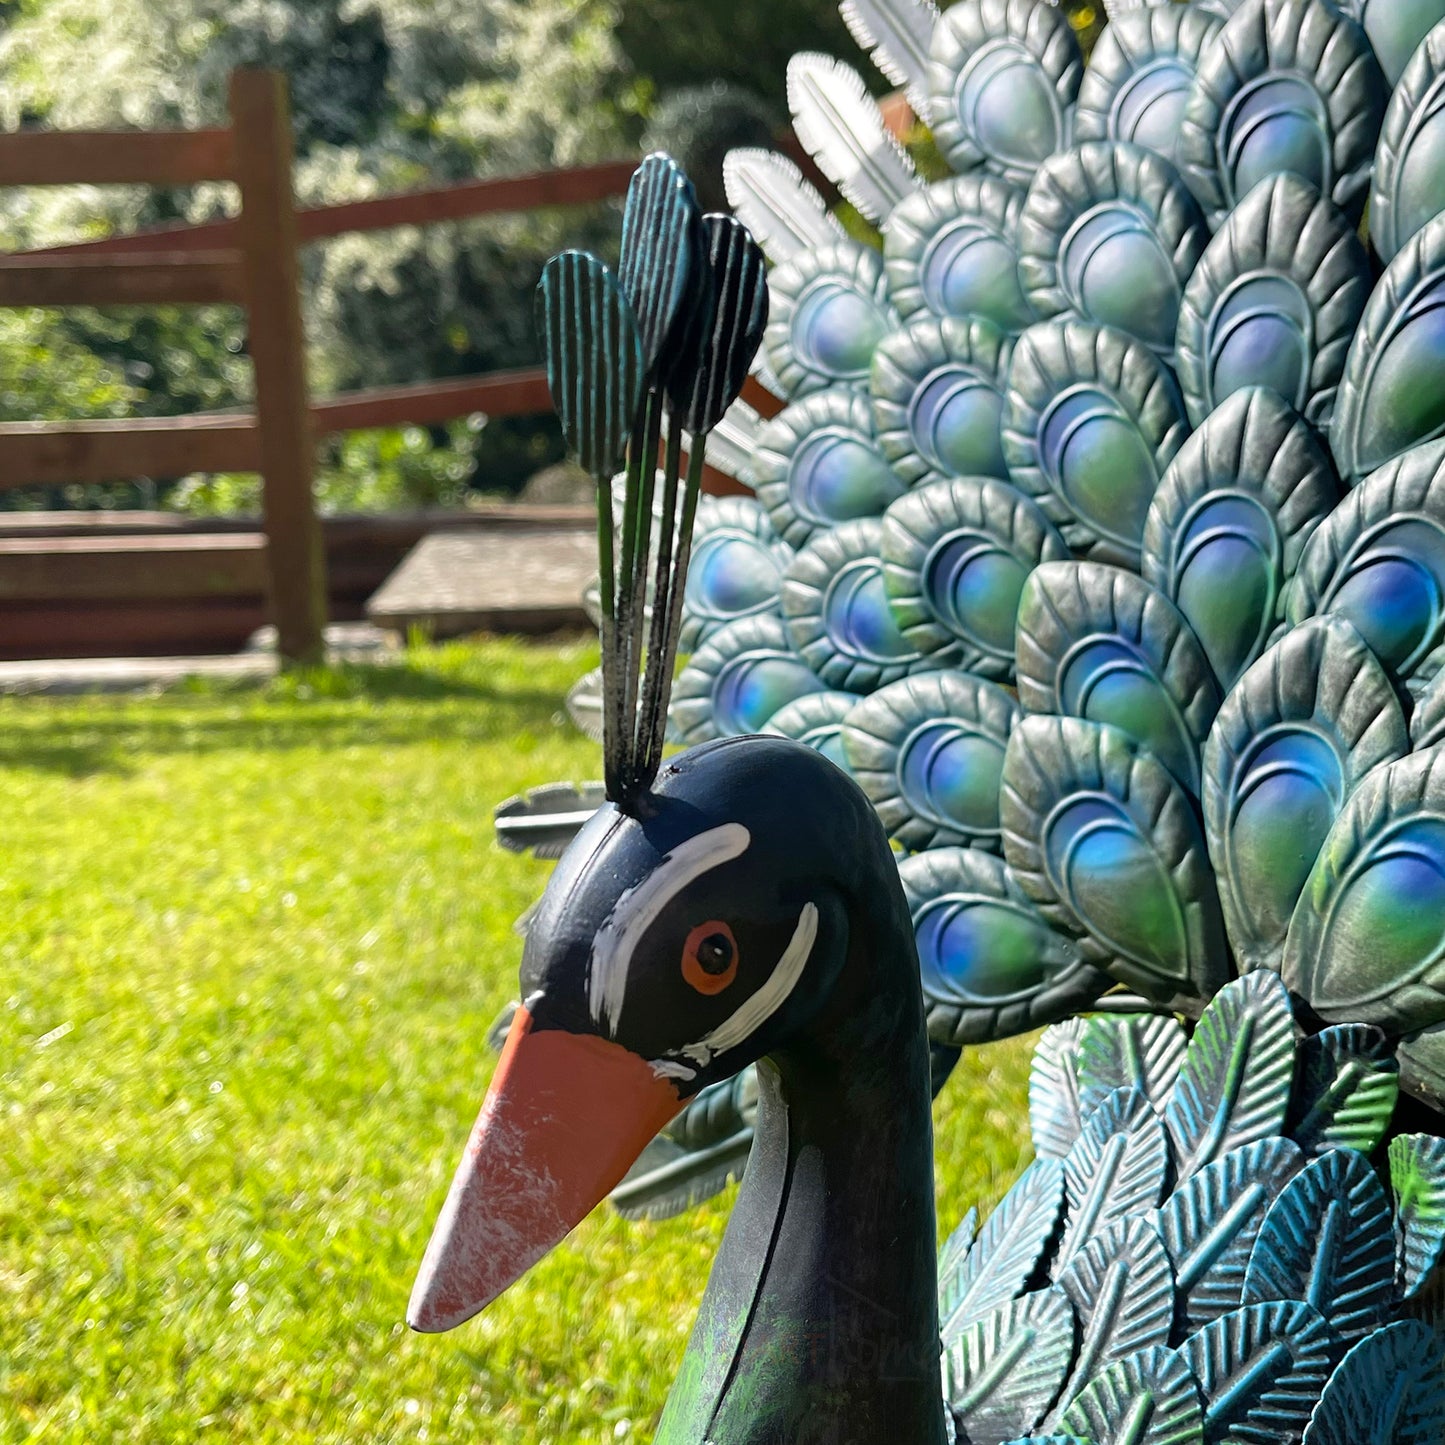 Fan Tailed Peacock Garden Ornament